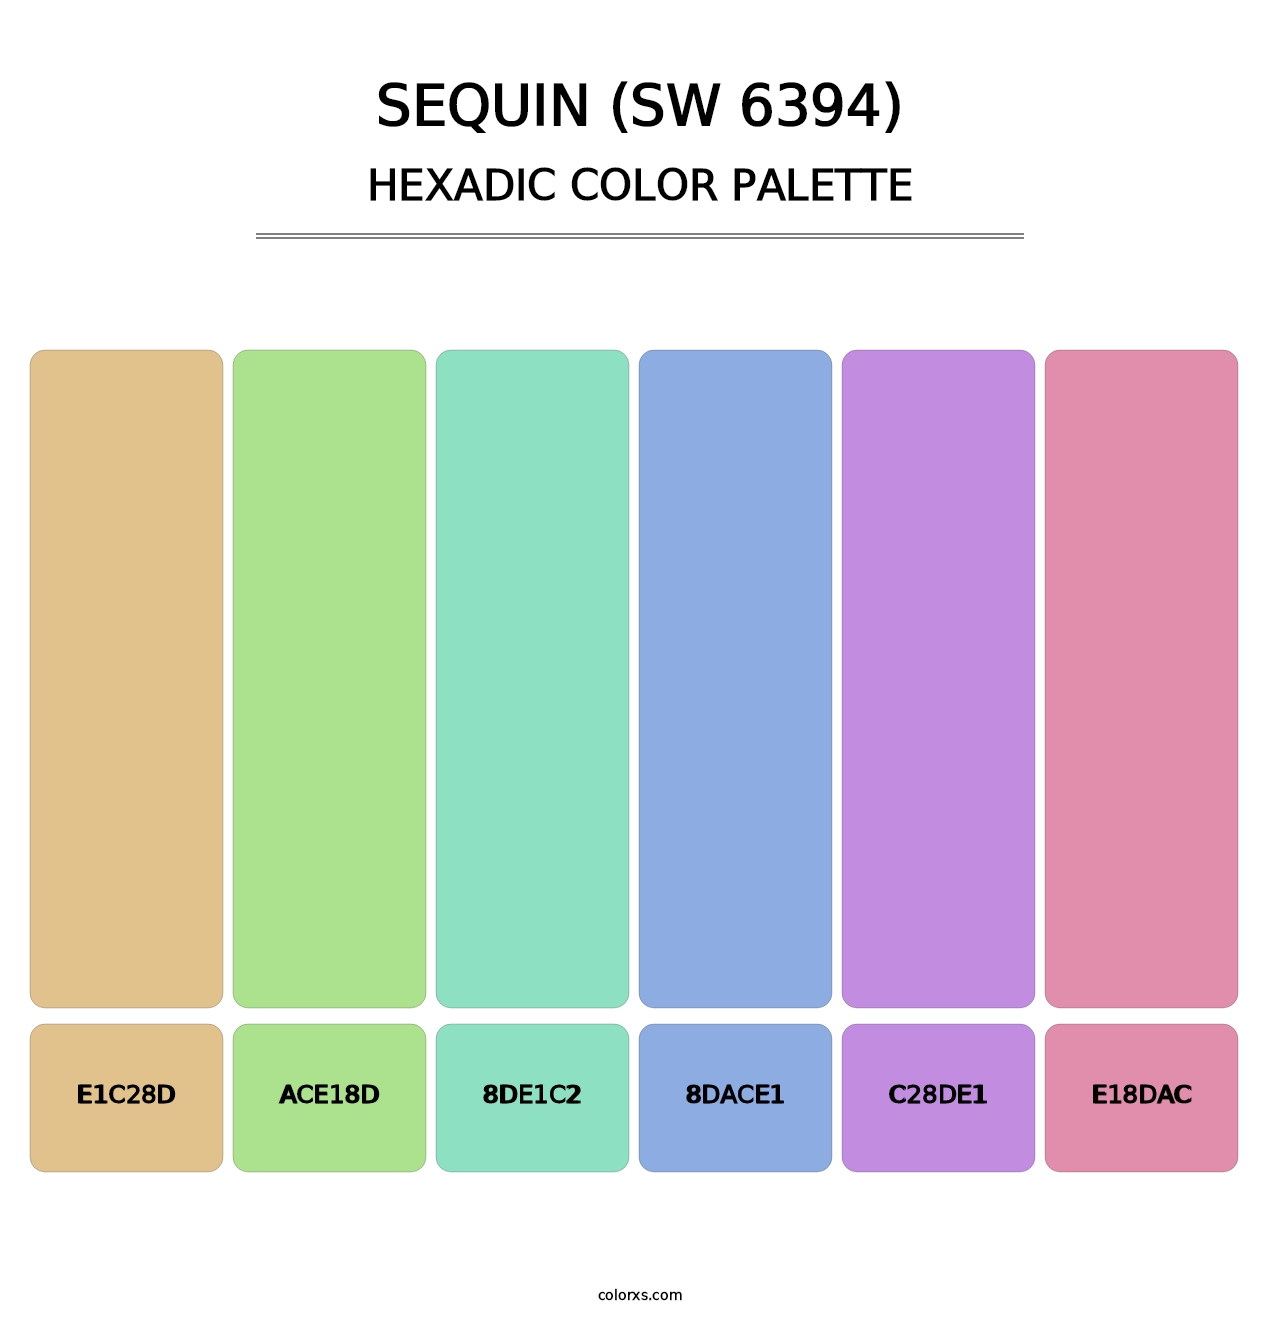 Sequin (SW 6394) - Hexadic Color Palette